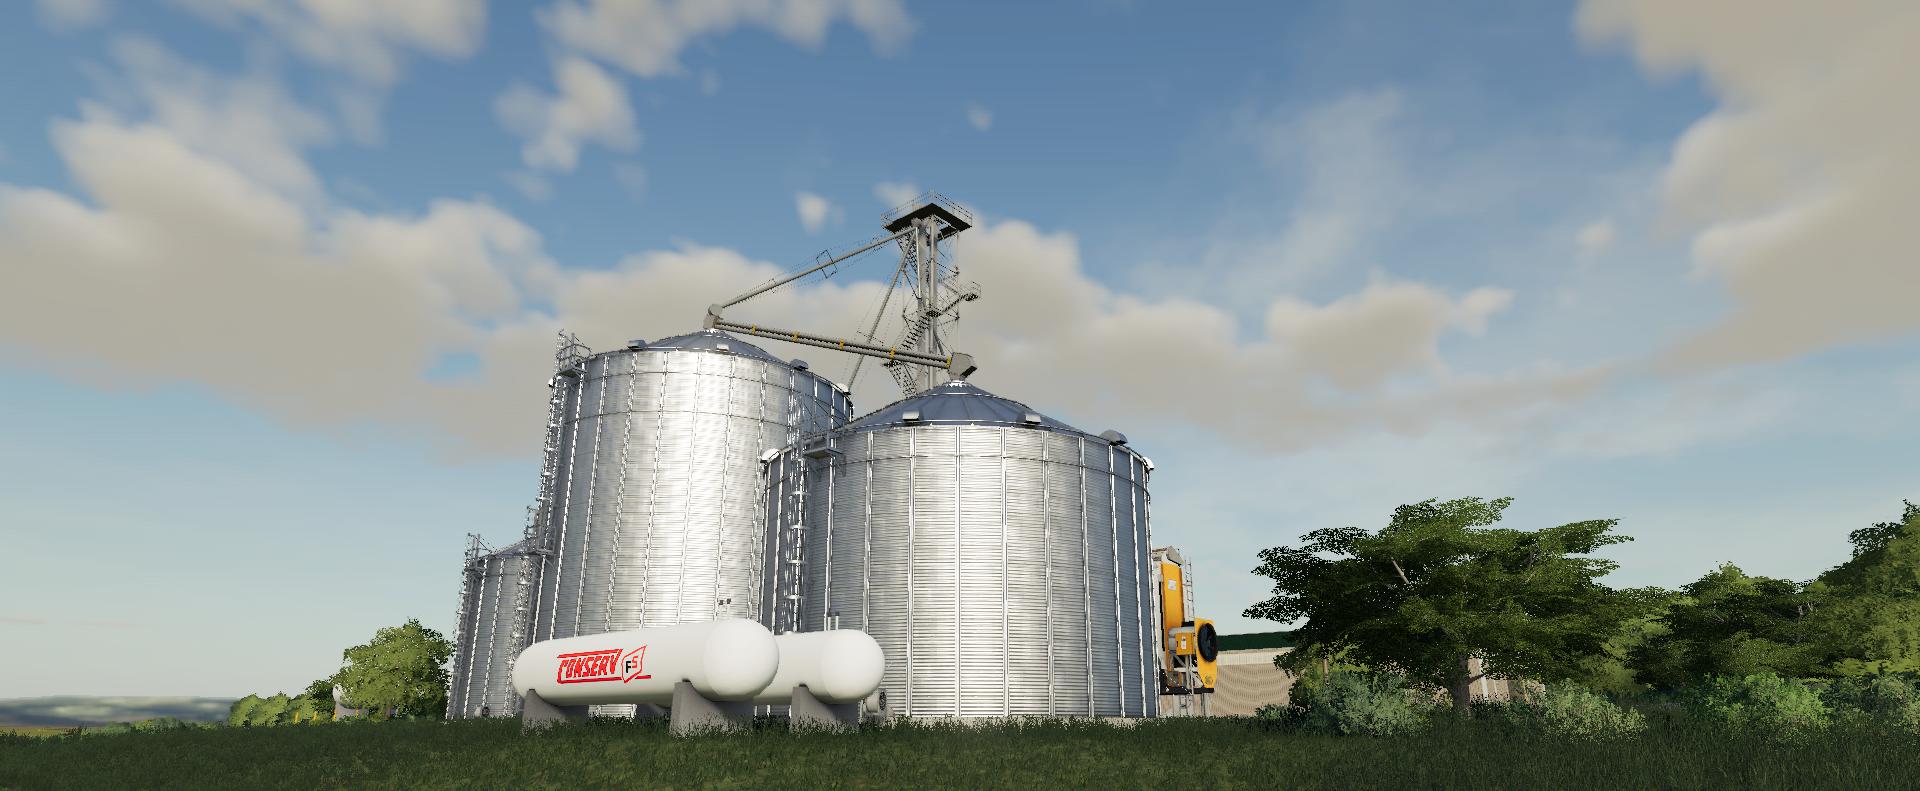 Gsi Grain Storage Bins V10 Fs19 Farming Simulator 19 Mod Fs19 Mod 3152